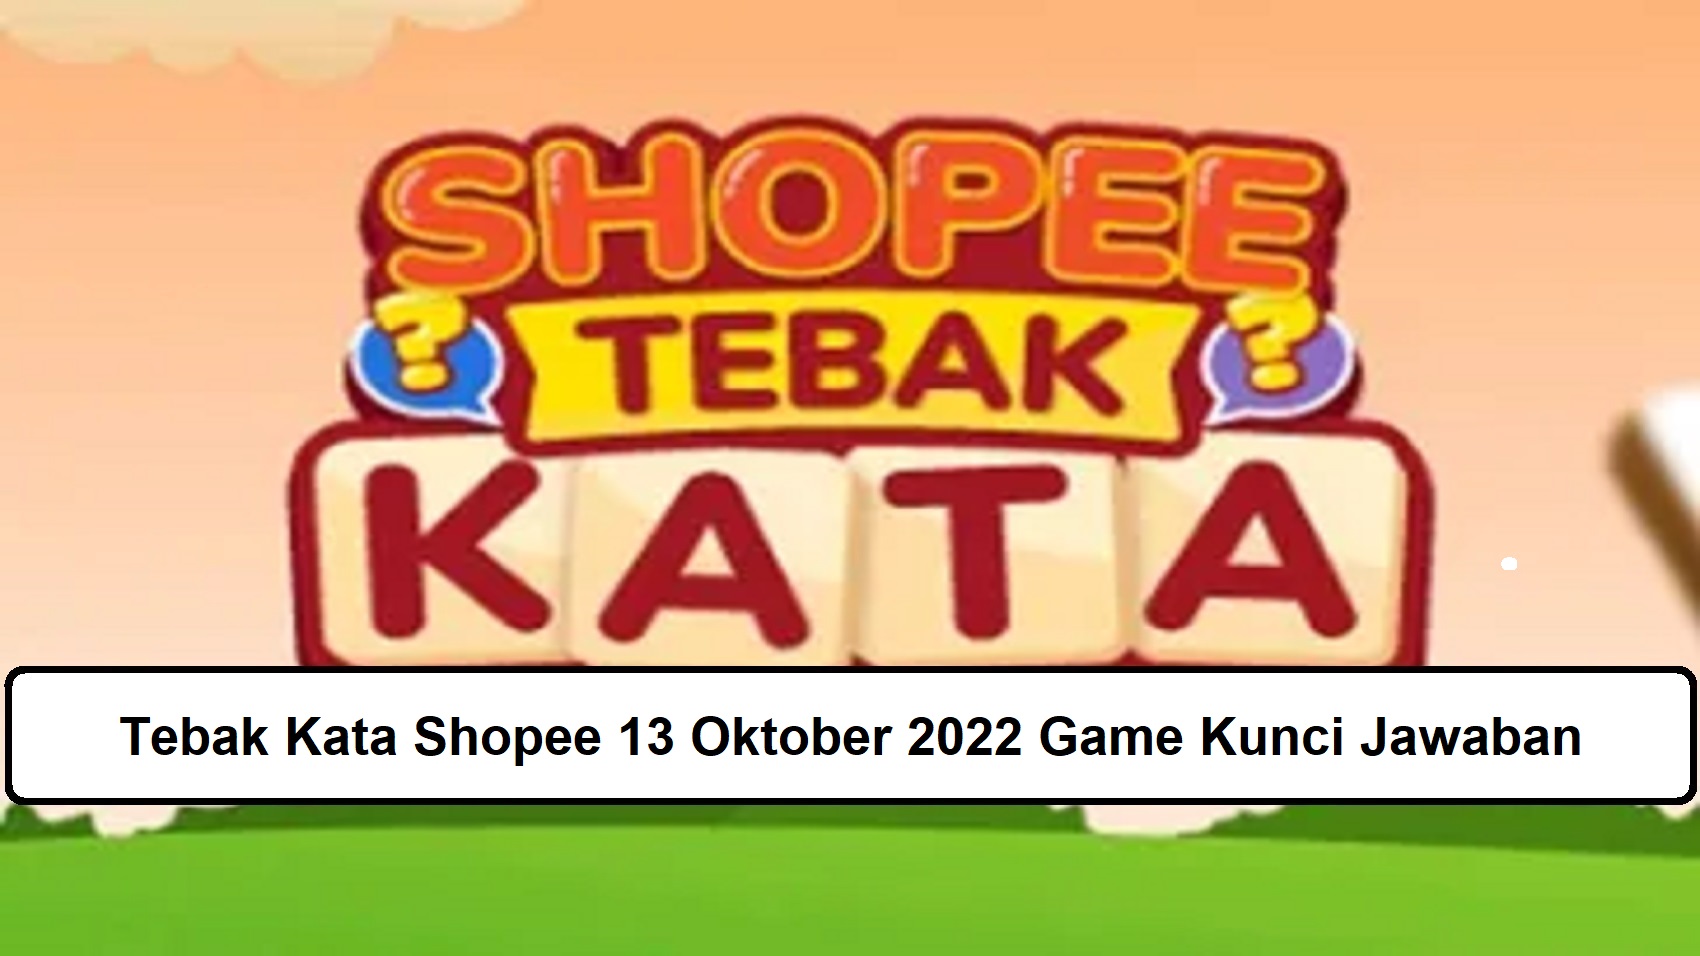 Tebak Kata Shopee 13 Oktober 2022 Game Kunci Jawaban